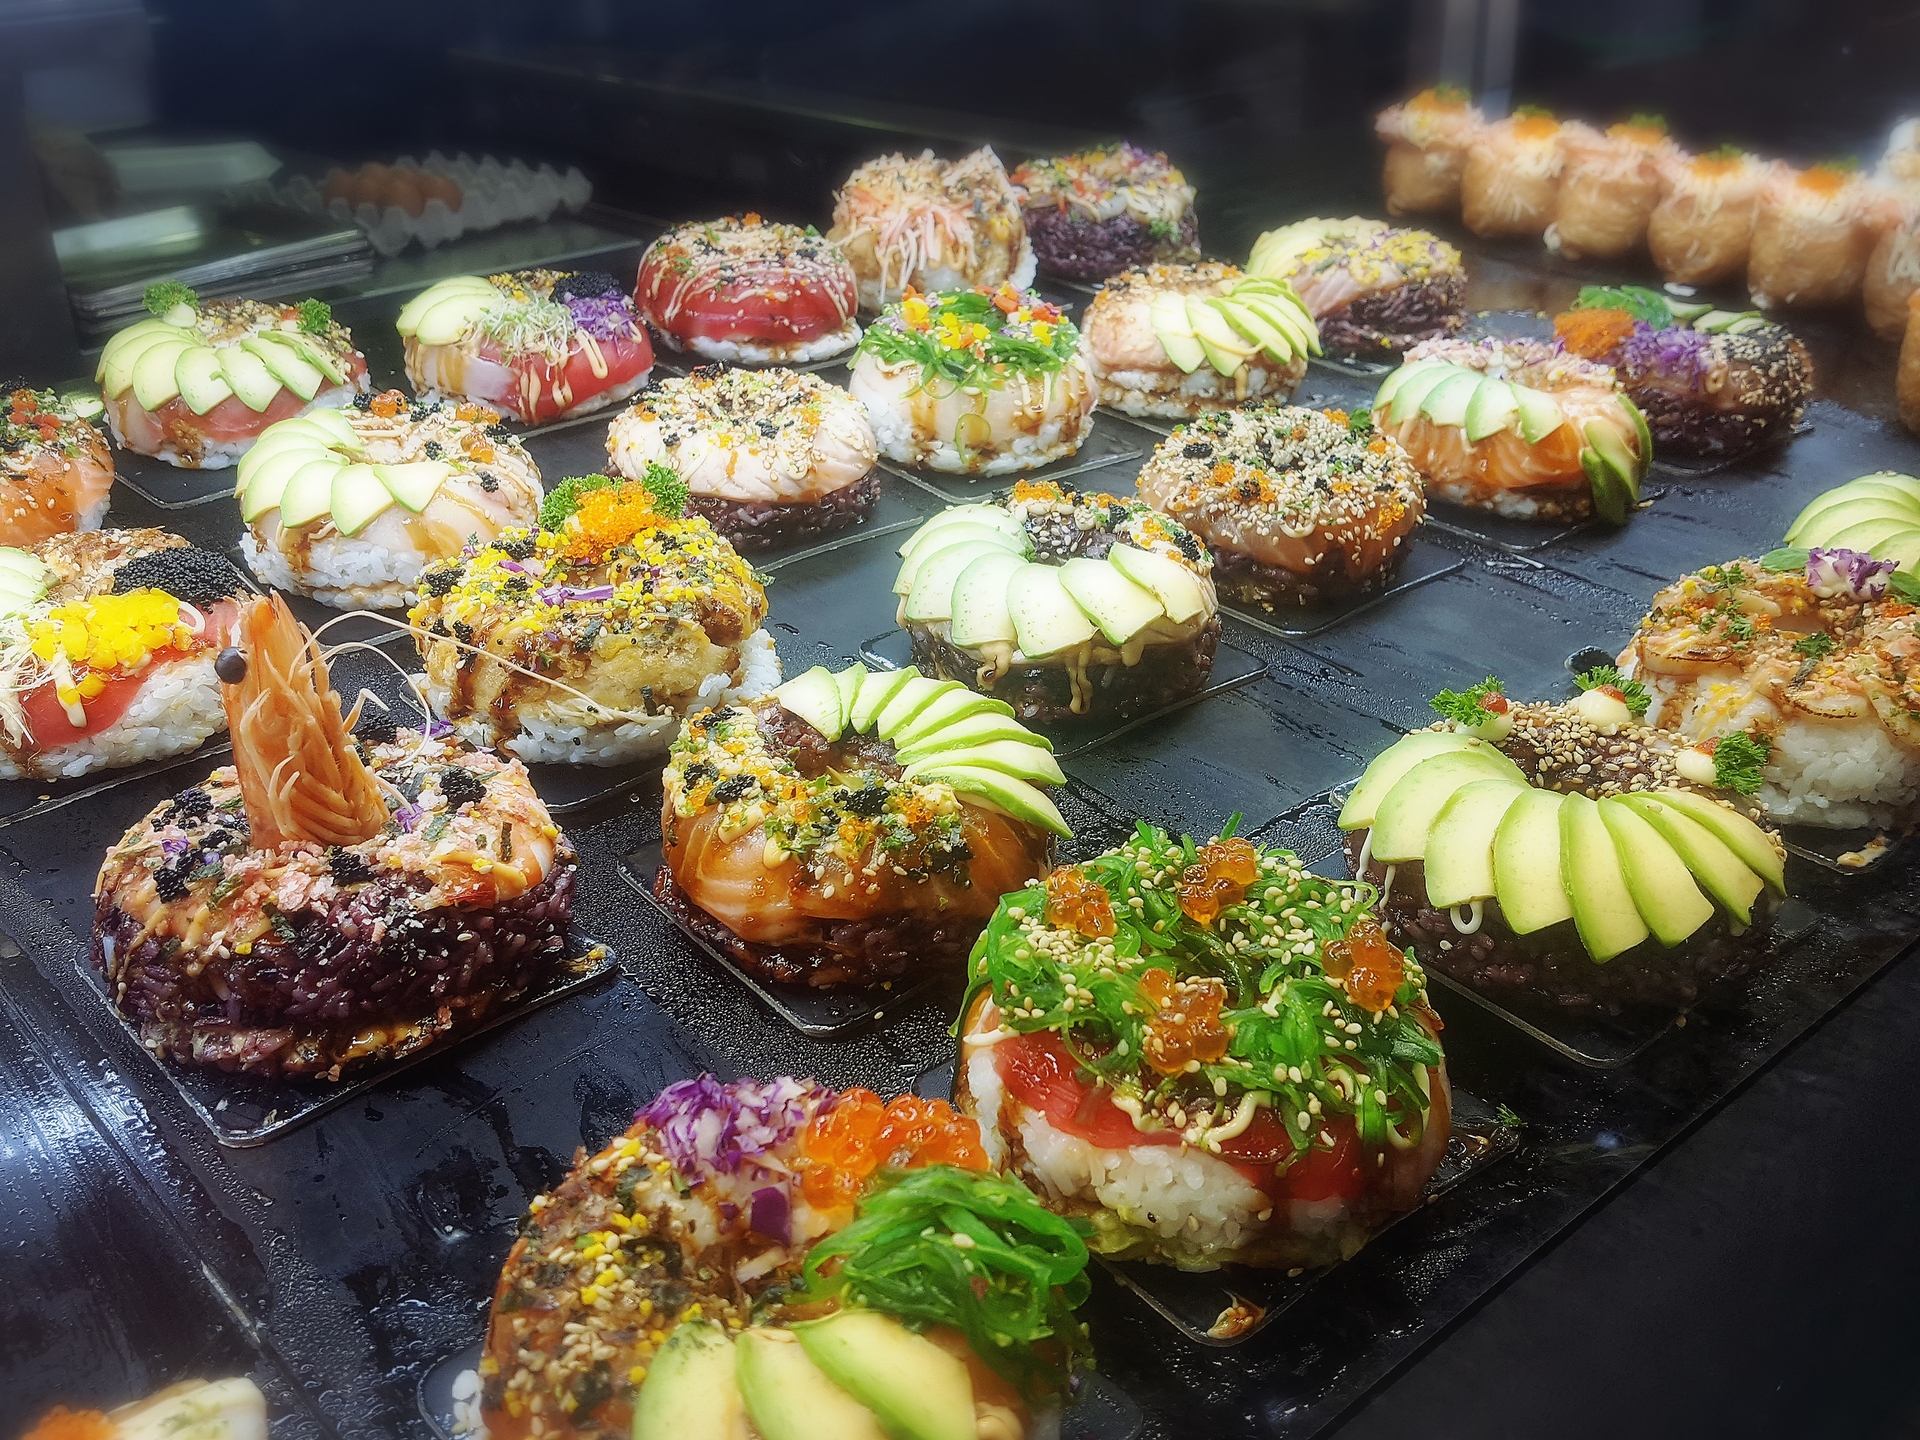 オーストラリアのお寿司 | ゴールドコースト在住Maikoさんのおすすめ料理・食べ物